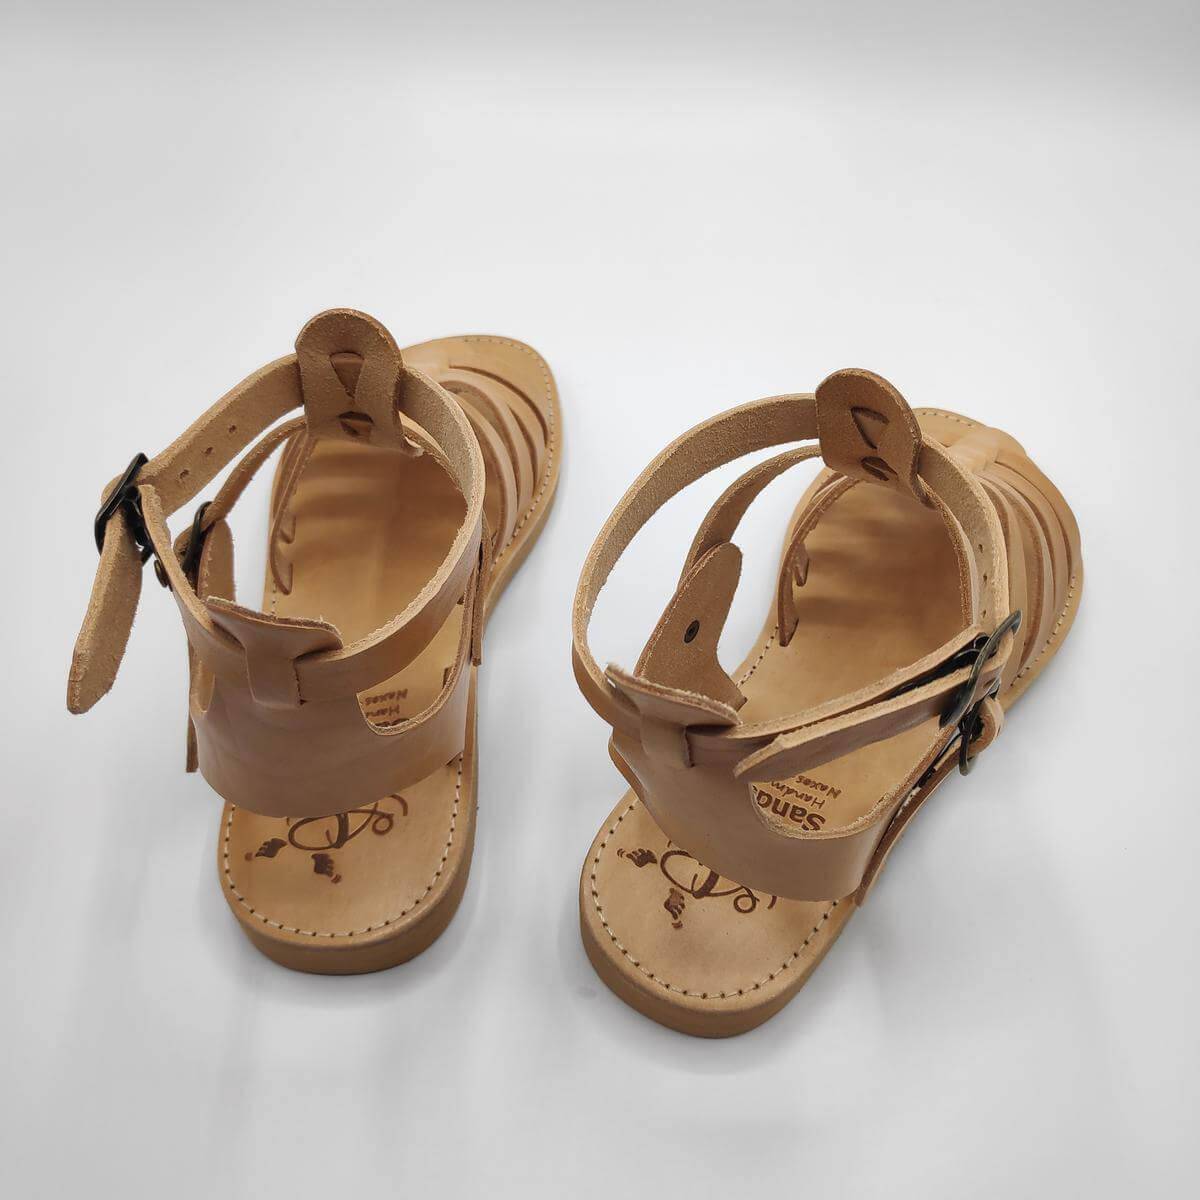 Griechische Sandalen ZANTE Natural Sandalias plataforma Shoes Womens Shoes Sandals Gladiator & Strappy Sandals Greek Leather Platform Sandals Espadrille Wedges Sandales Grecques Compensées 